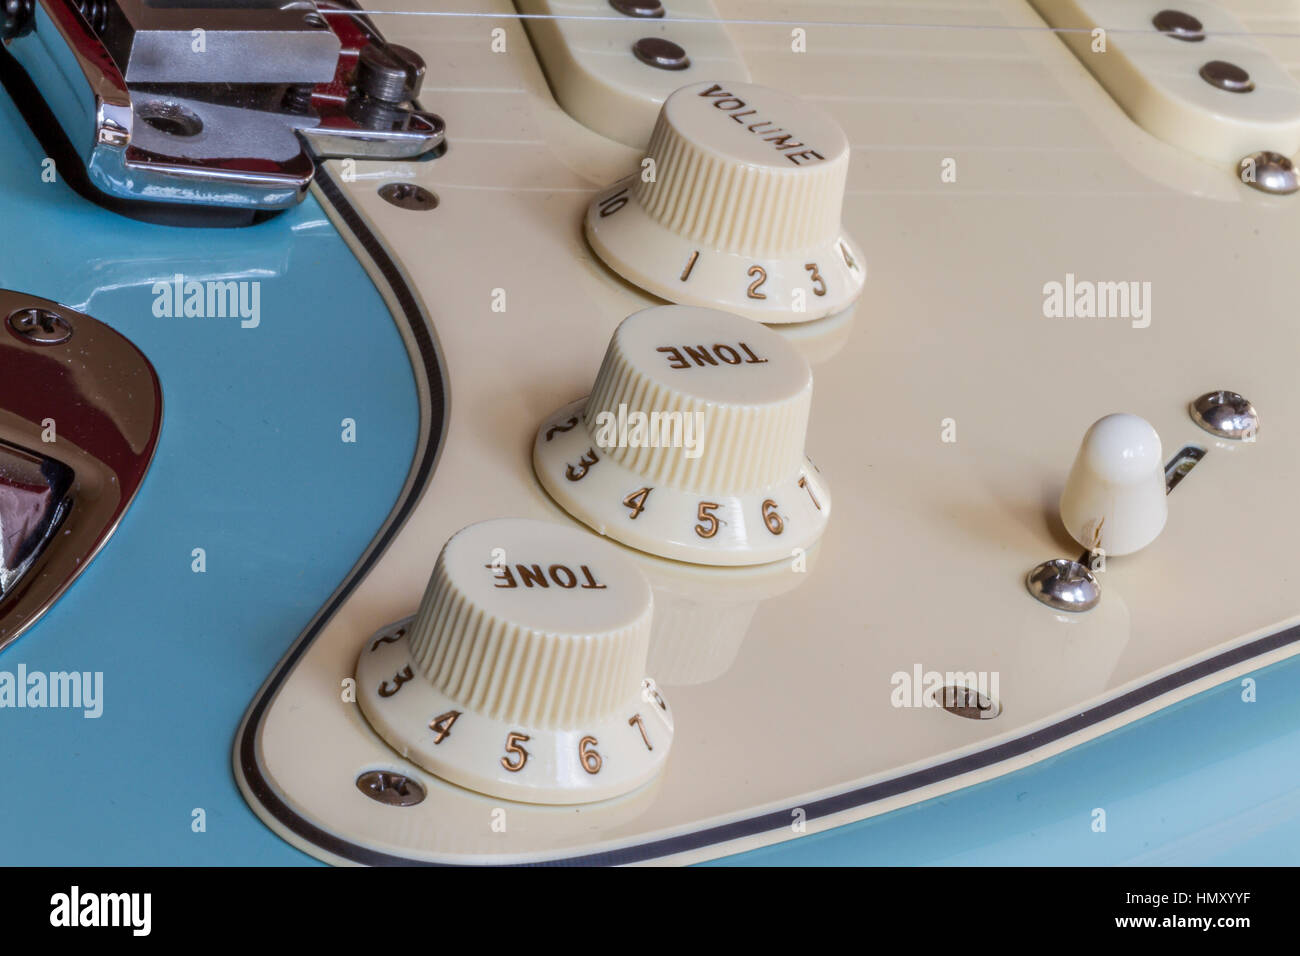 Nahaufnahme eines Fender Stratocaster E-Gitarre mit Lautstärke- und Tonregler, Steg, Pick-ups und Pole-pieces nad bis Selector wählen Stockfoto